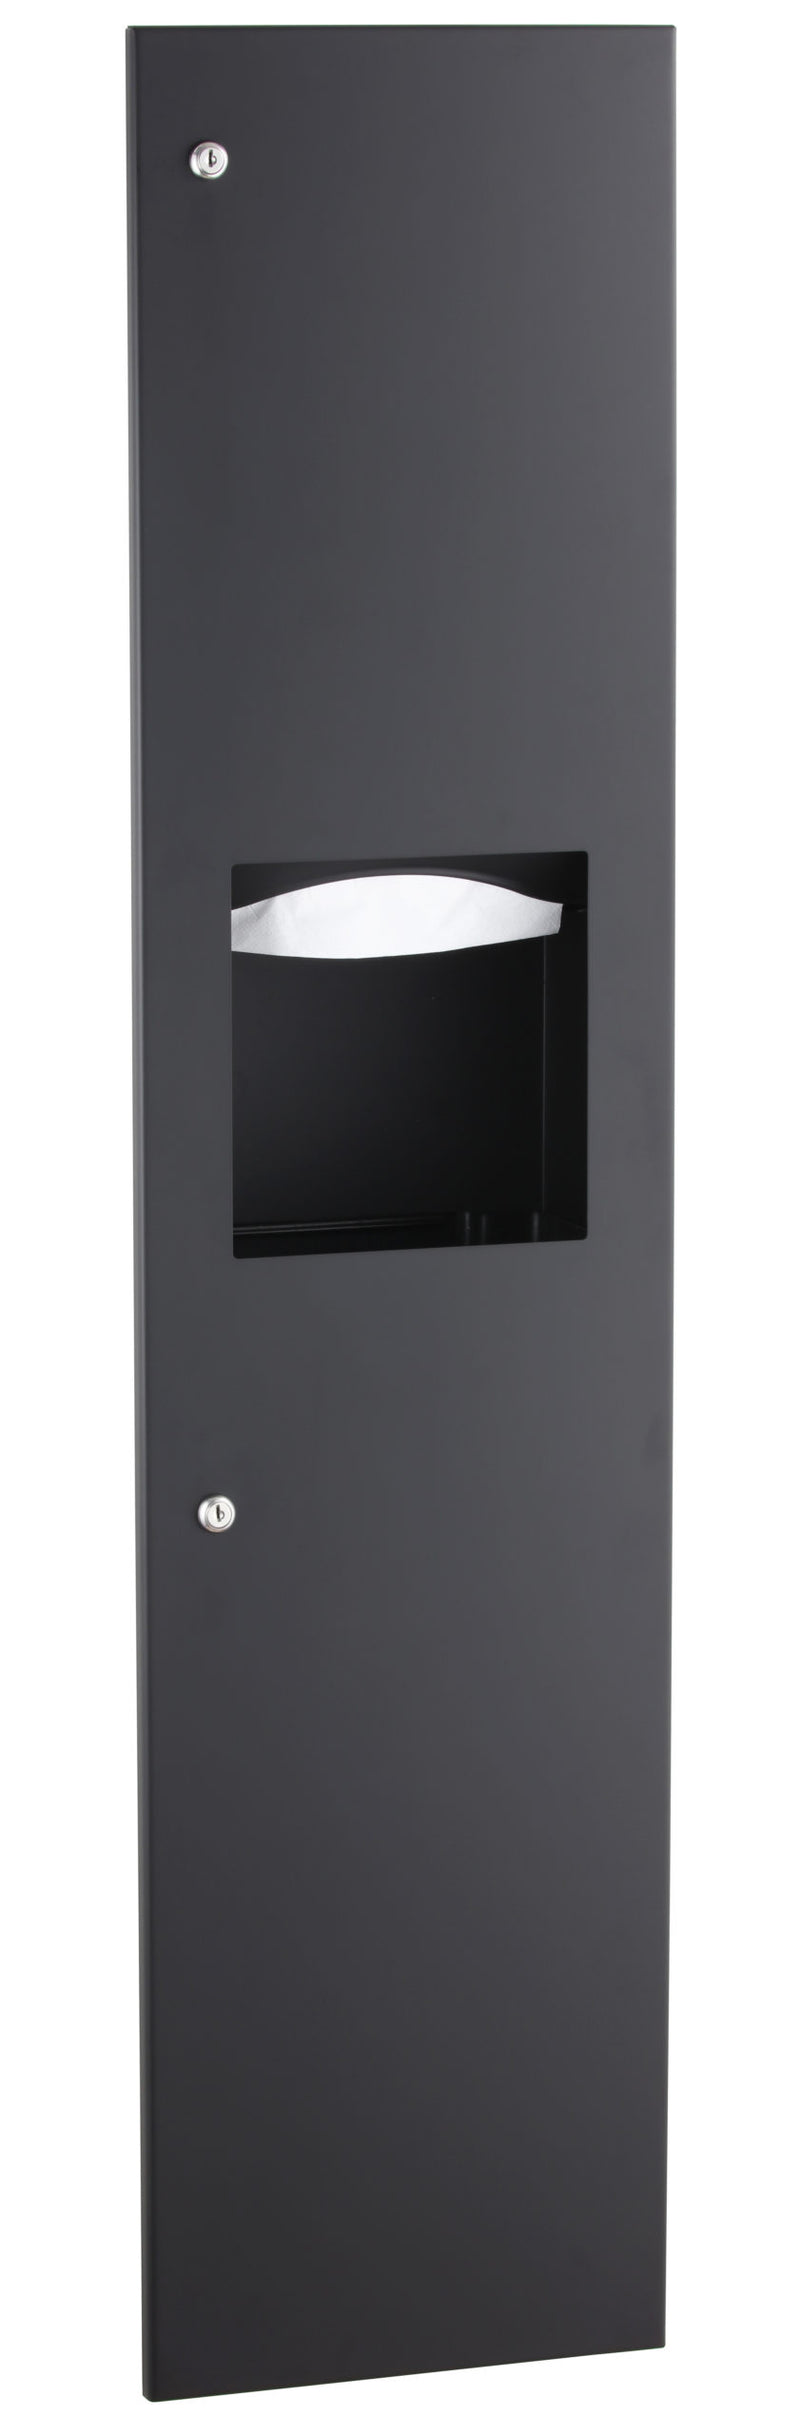 Bobrick B-3803.MBLK - TrimLineSeries™ Recessed Paper Towel Dispenser/Waste Receptacle, Matte Black